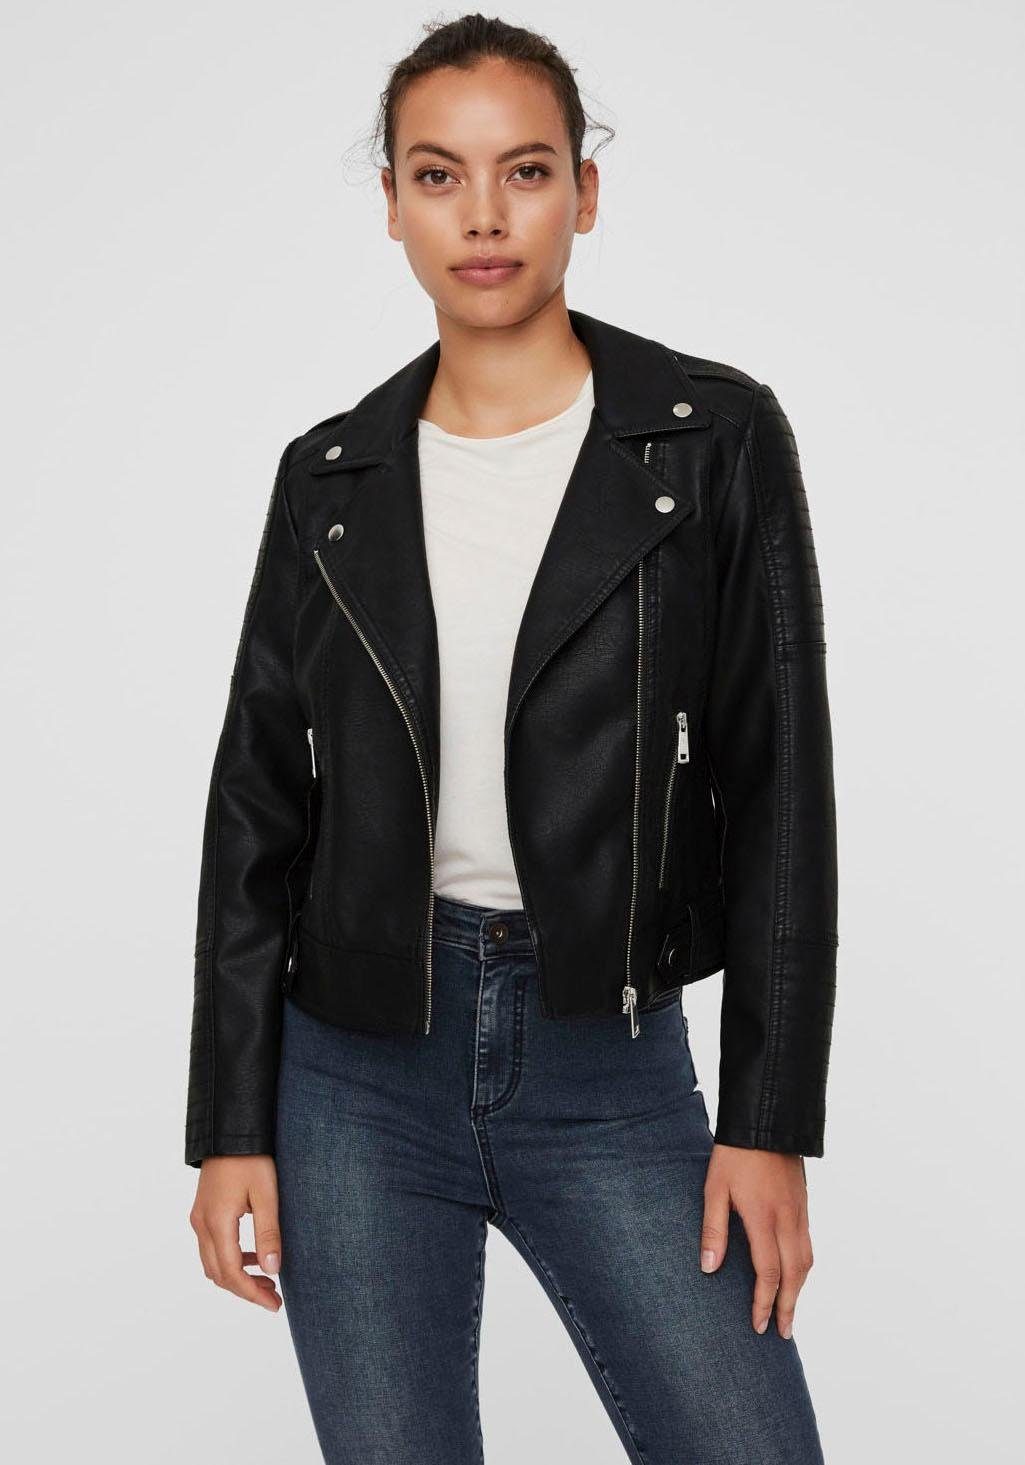 Vero Moda Jacken online kaufen | OTTO